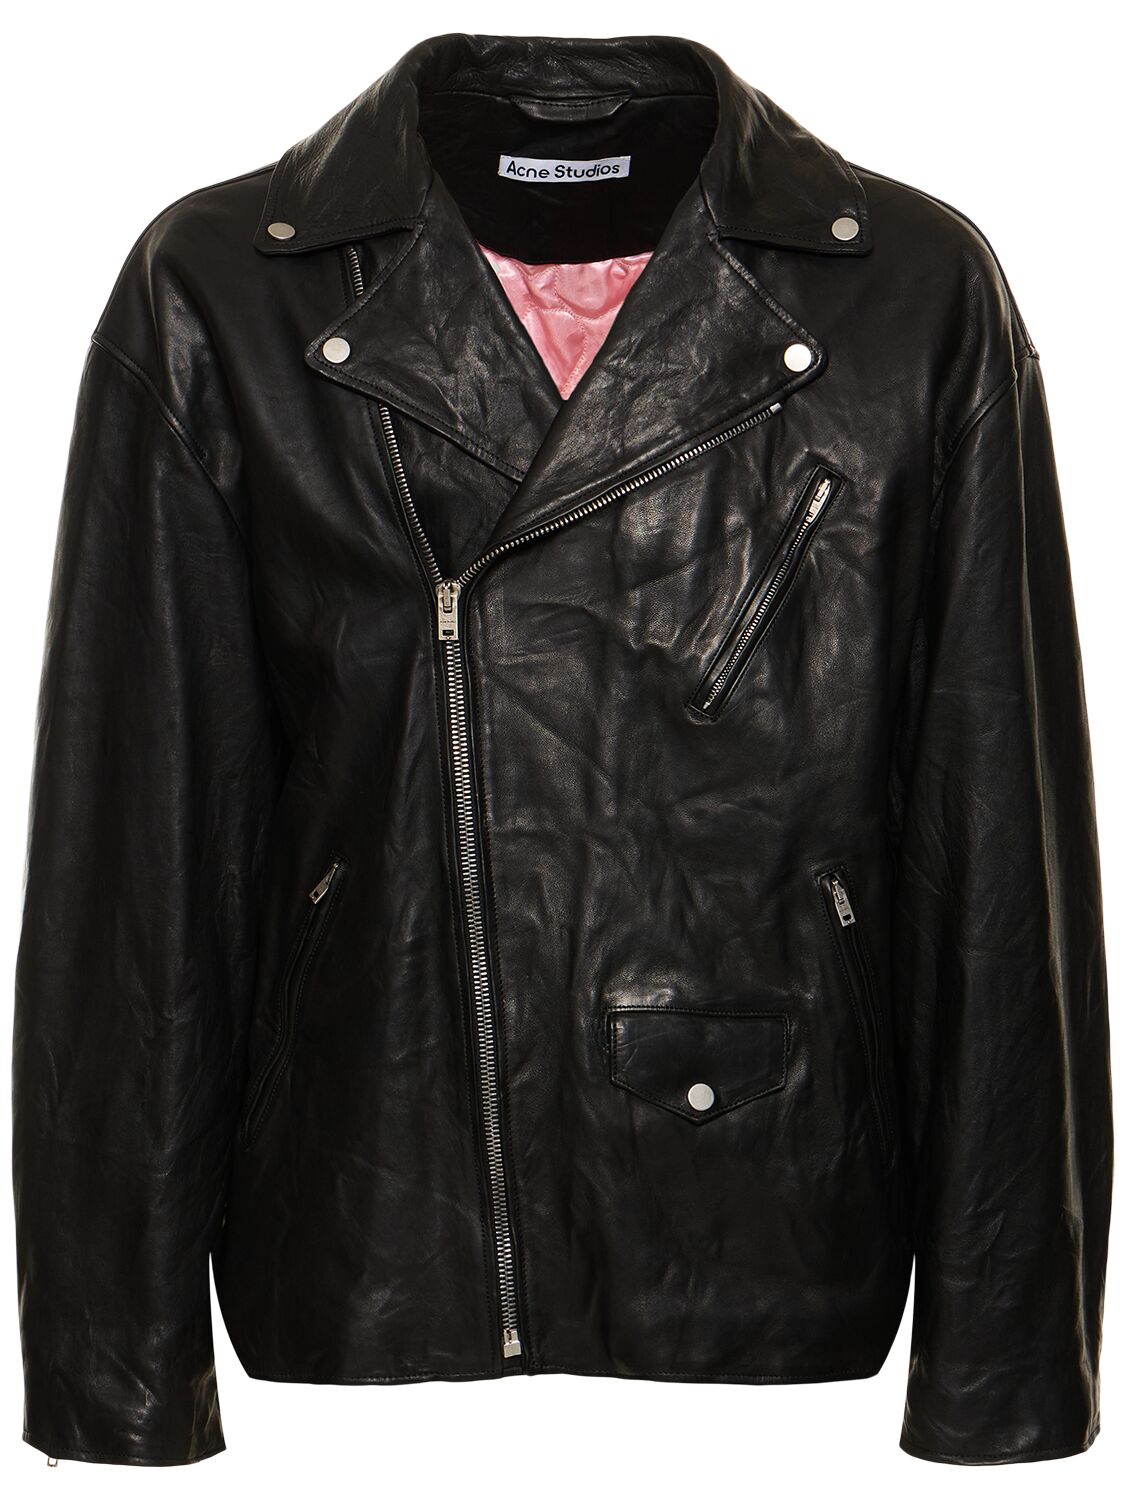 Liker Distressed Leather Jacket